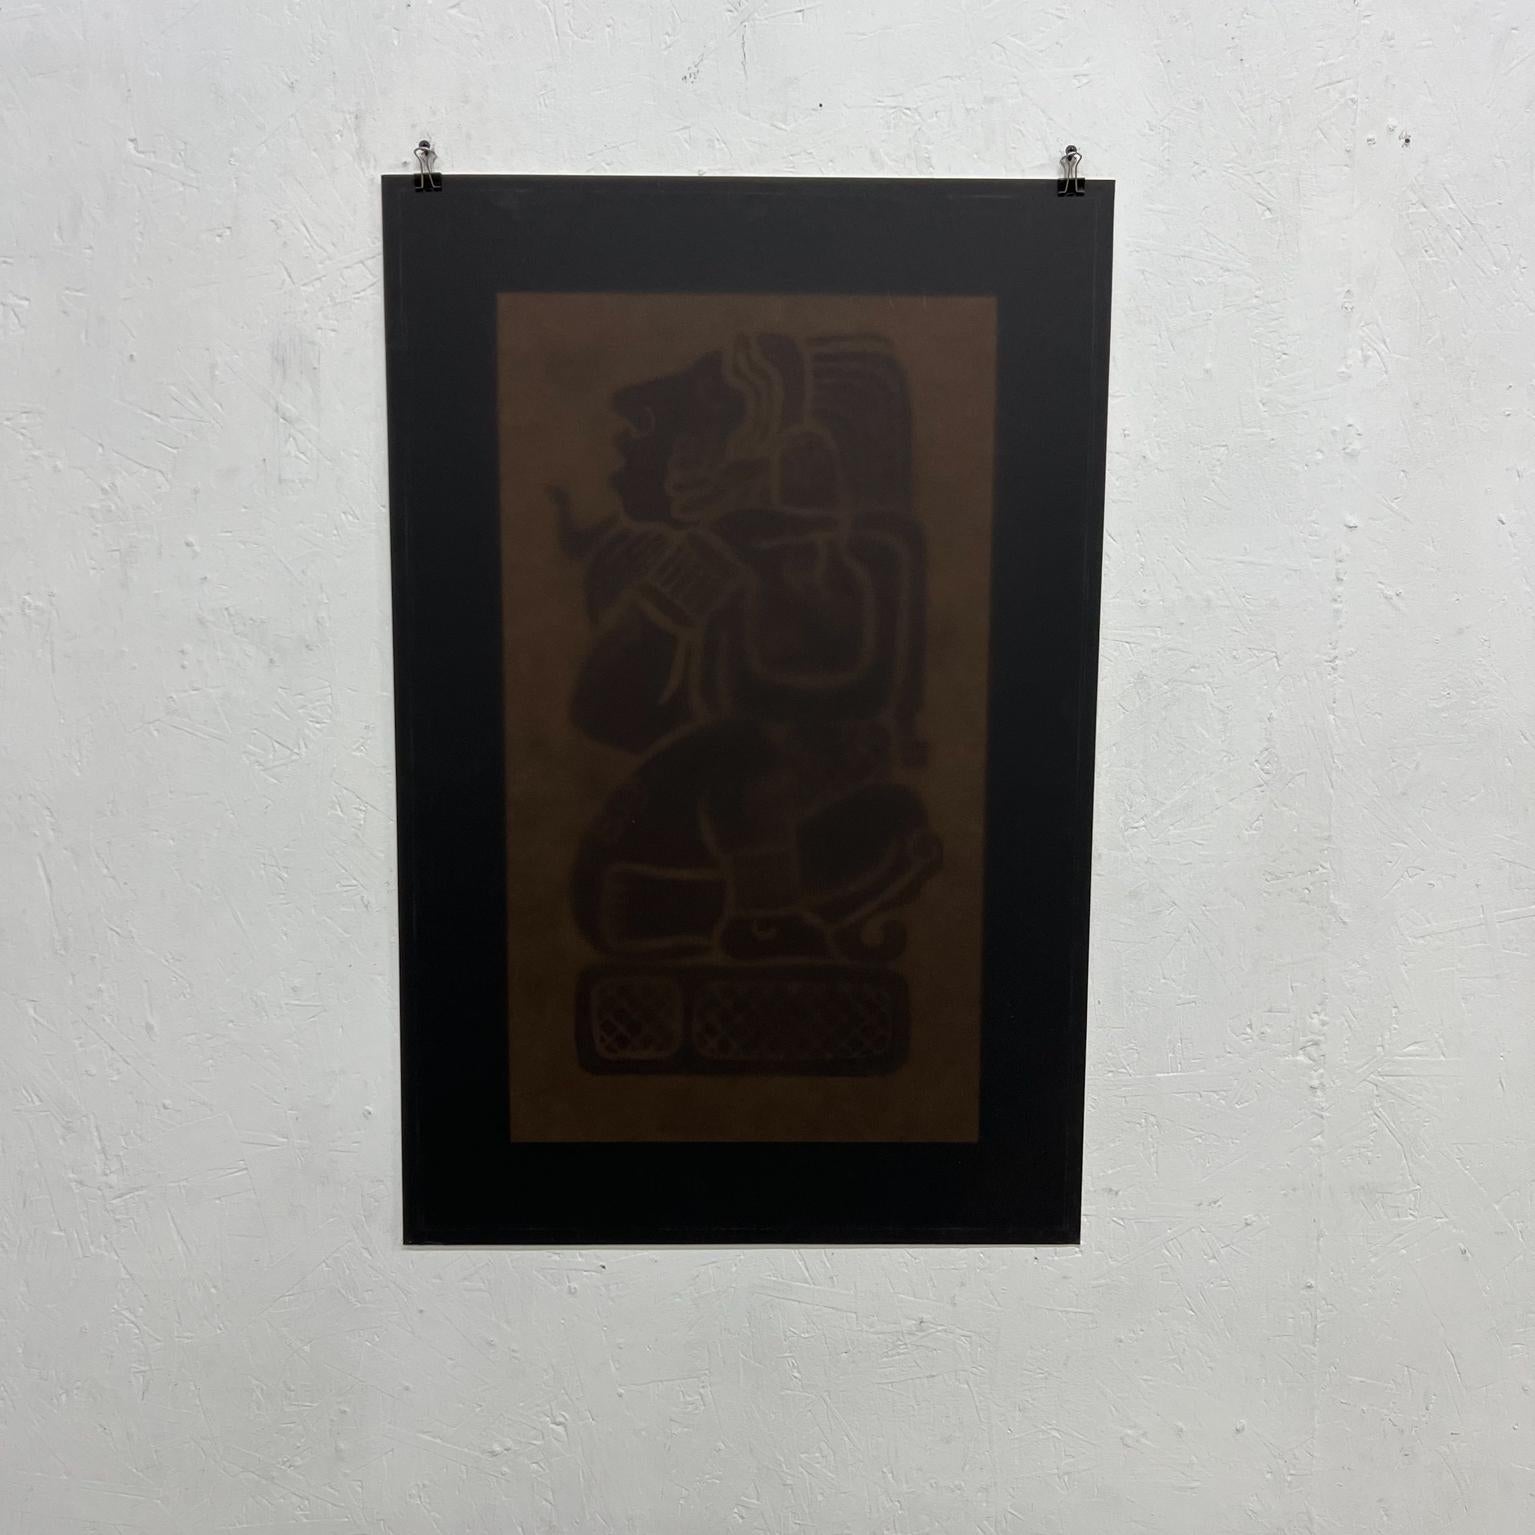 Intricate Mayan Revival Art Vintage poster photo noir incertain de la technique apparaît comme une photographie sur le papier.
État vintage non restauré.
Veuillez examiner les images fournies.
Mesures : 21 x 32.